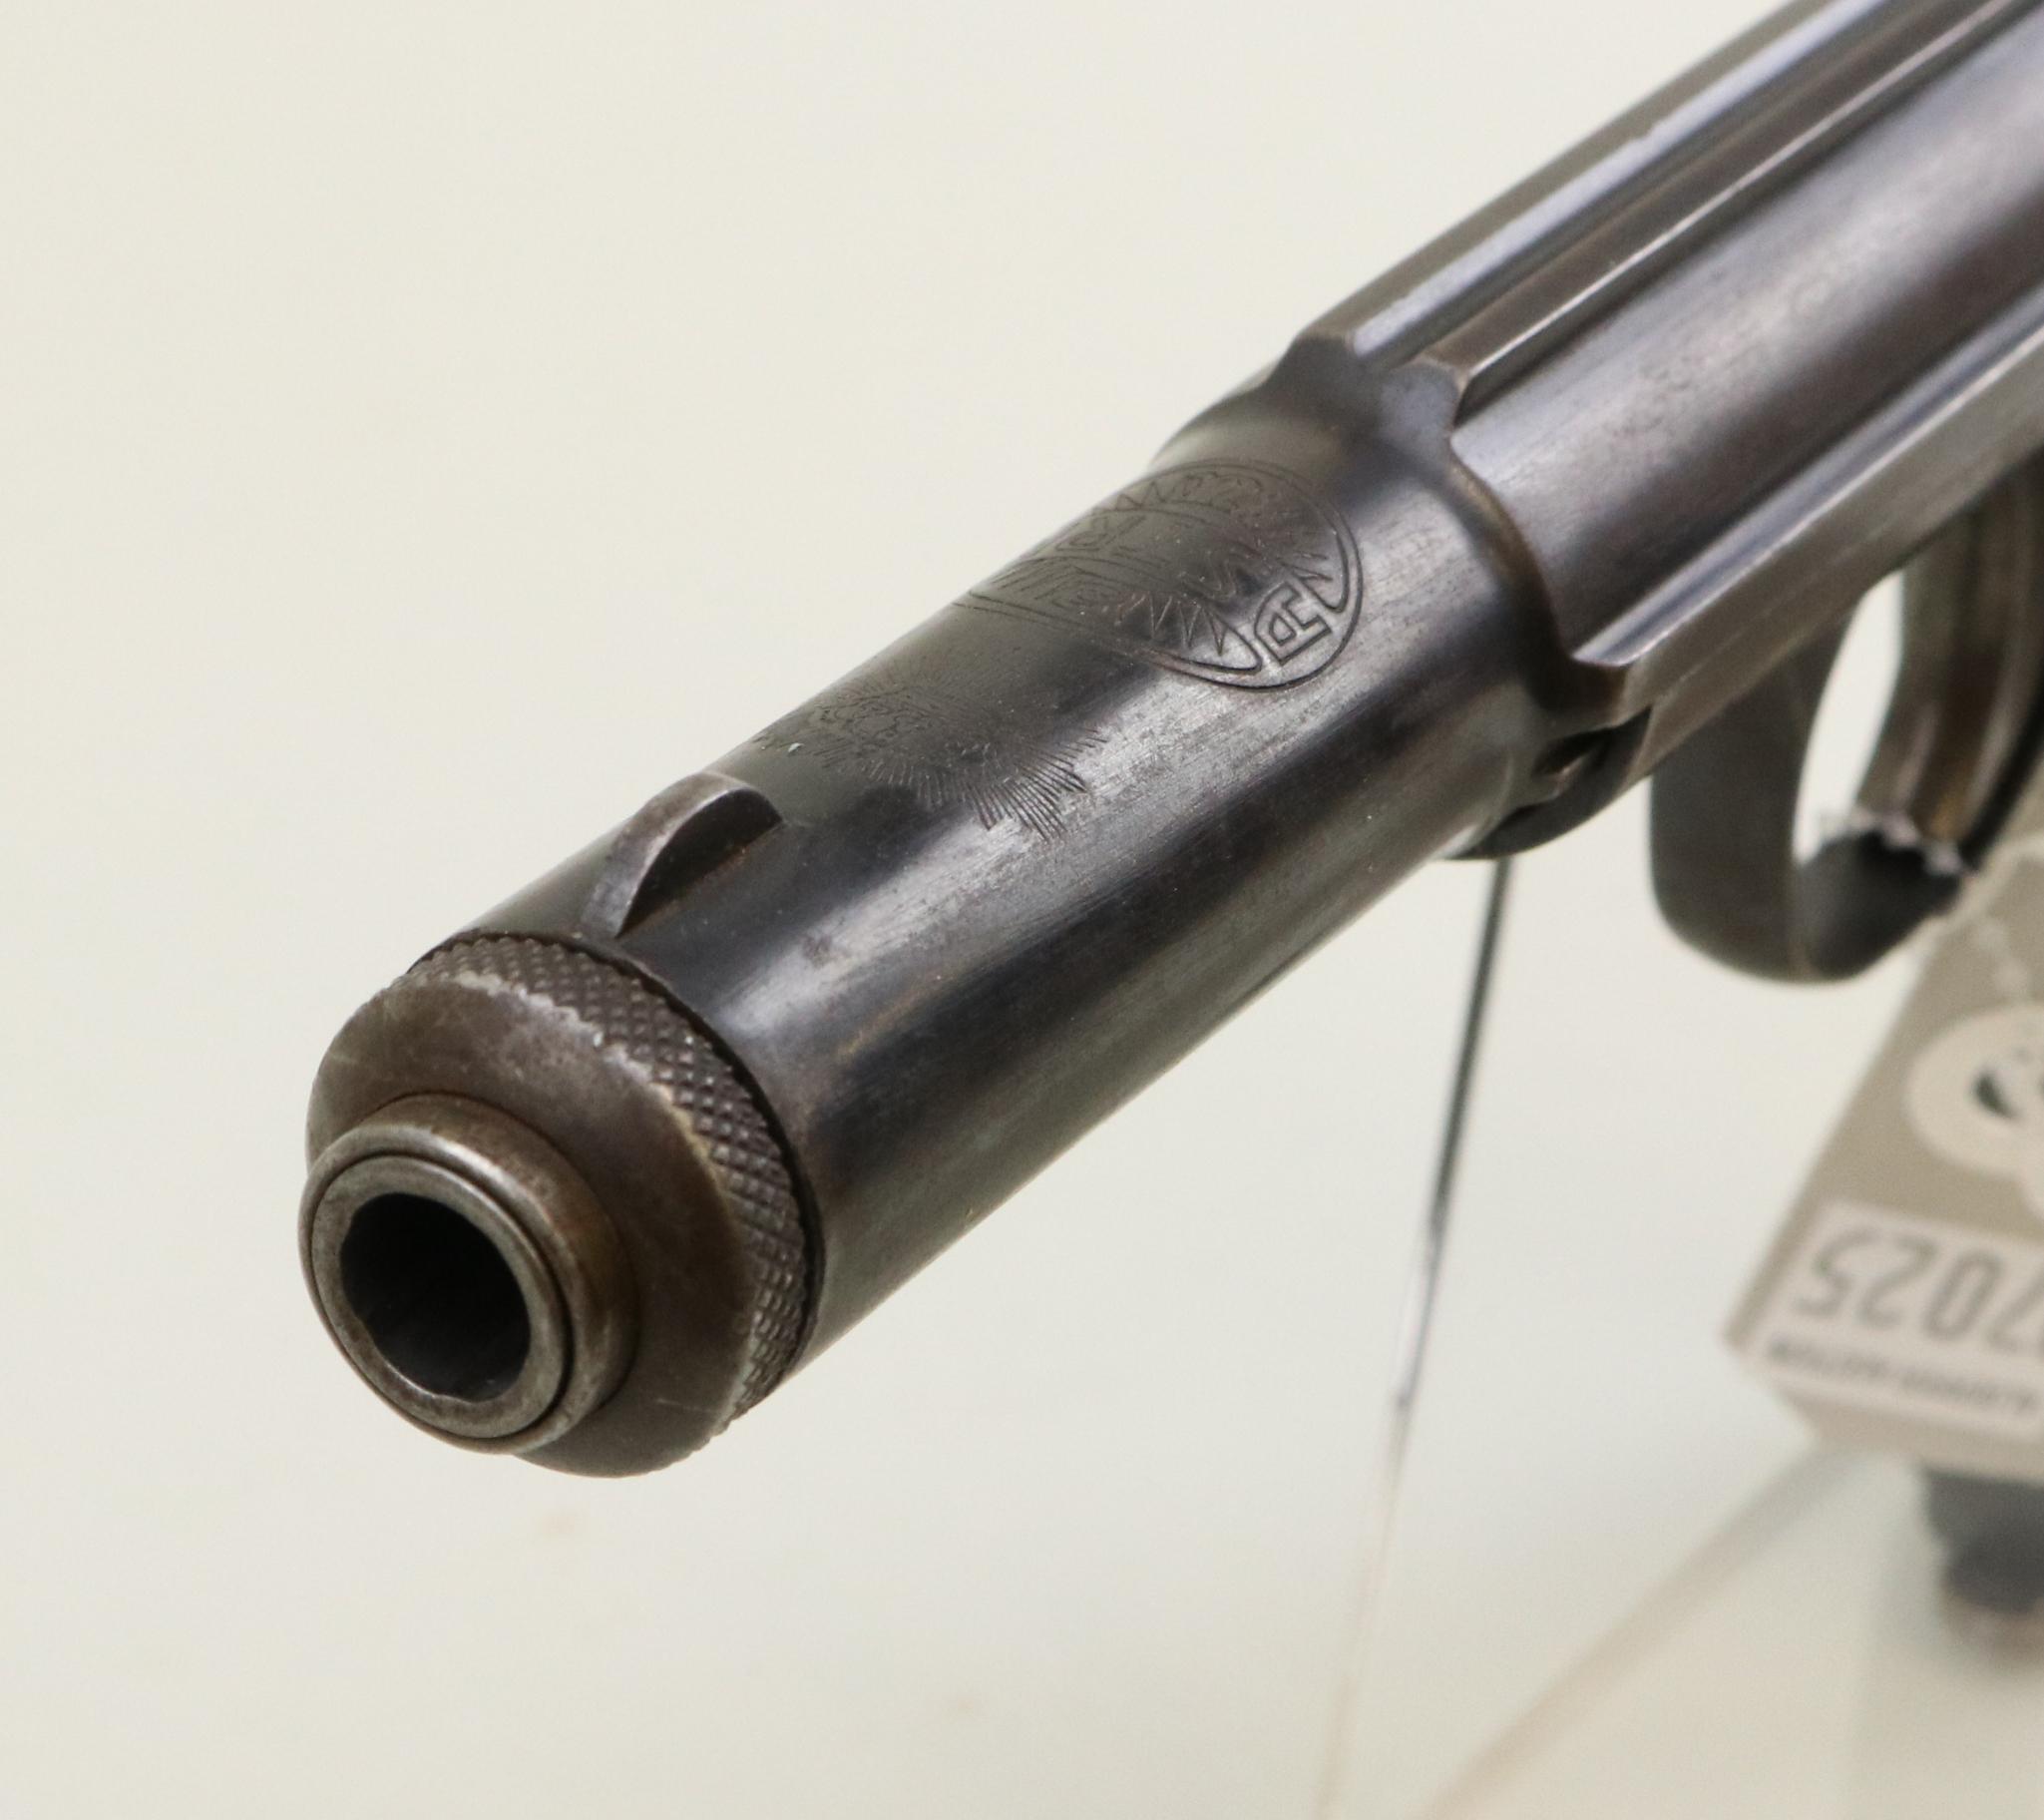 Astra Model 400/1921 semi-automatic pistol.